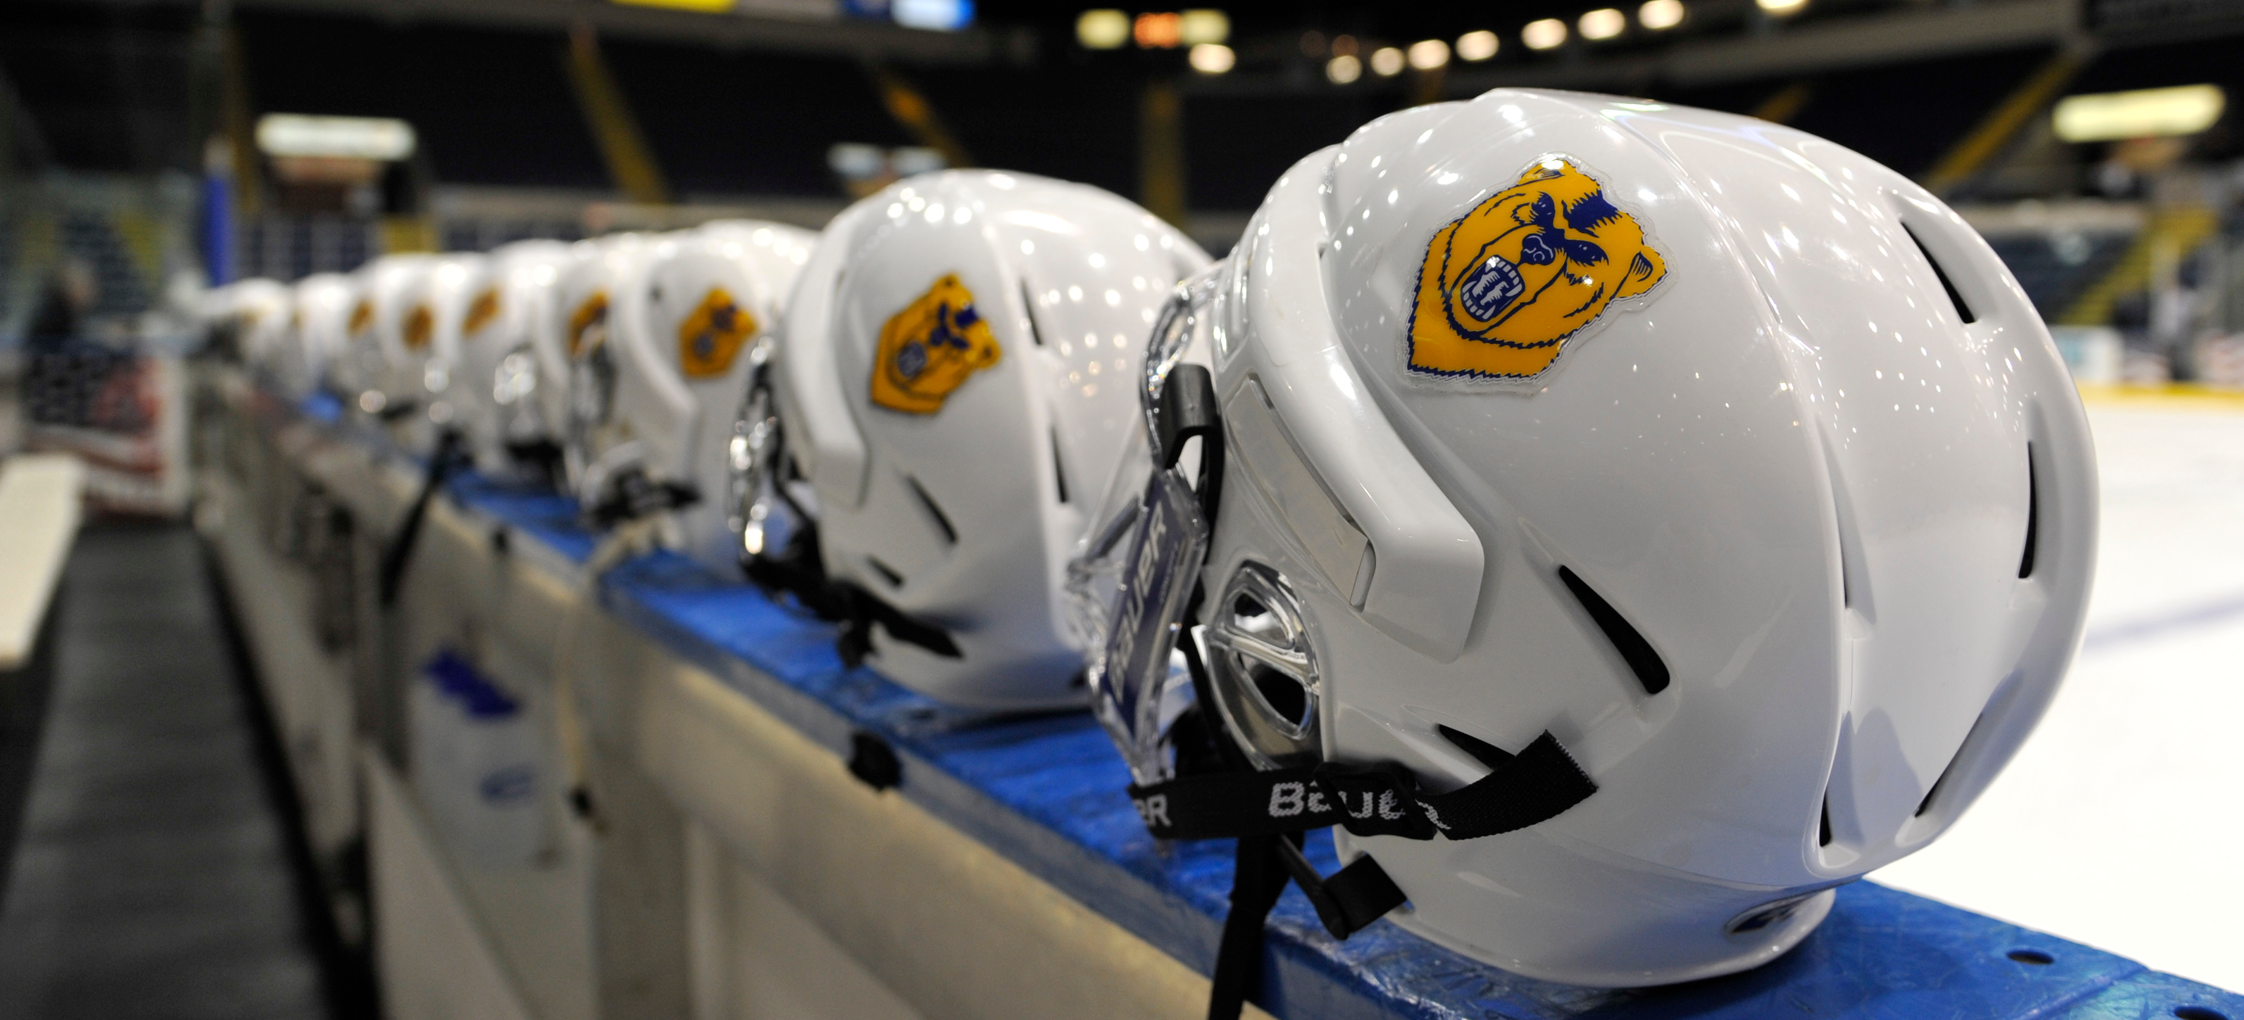 hockey helmets with golden Bears Logo